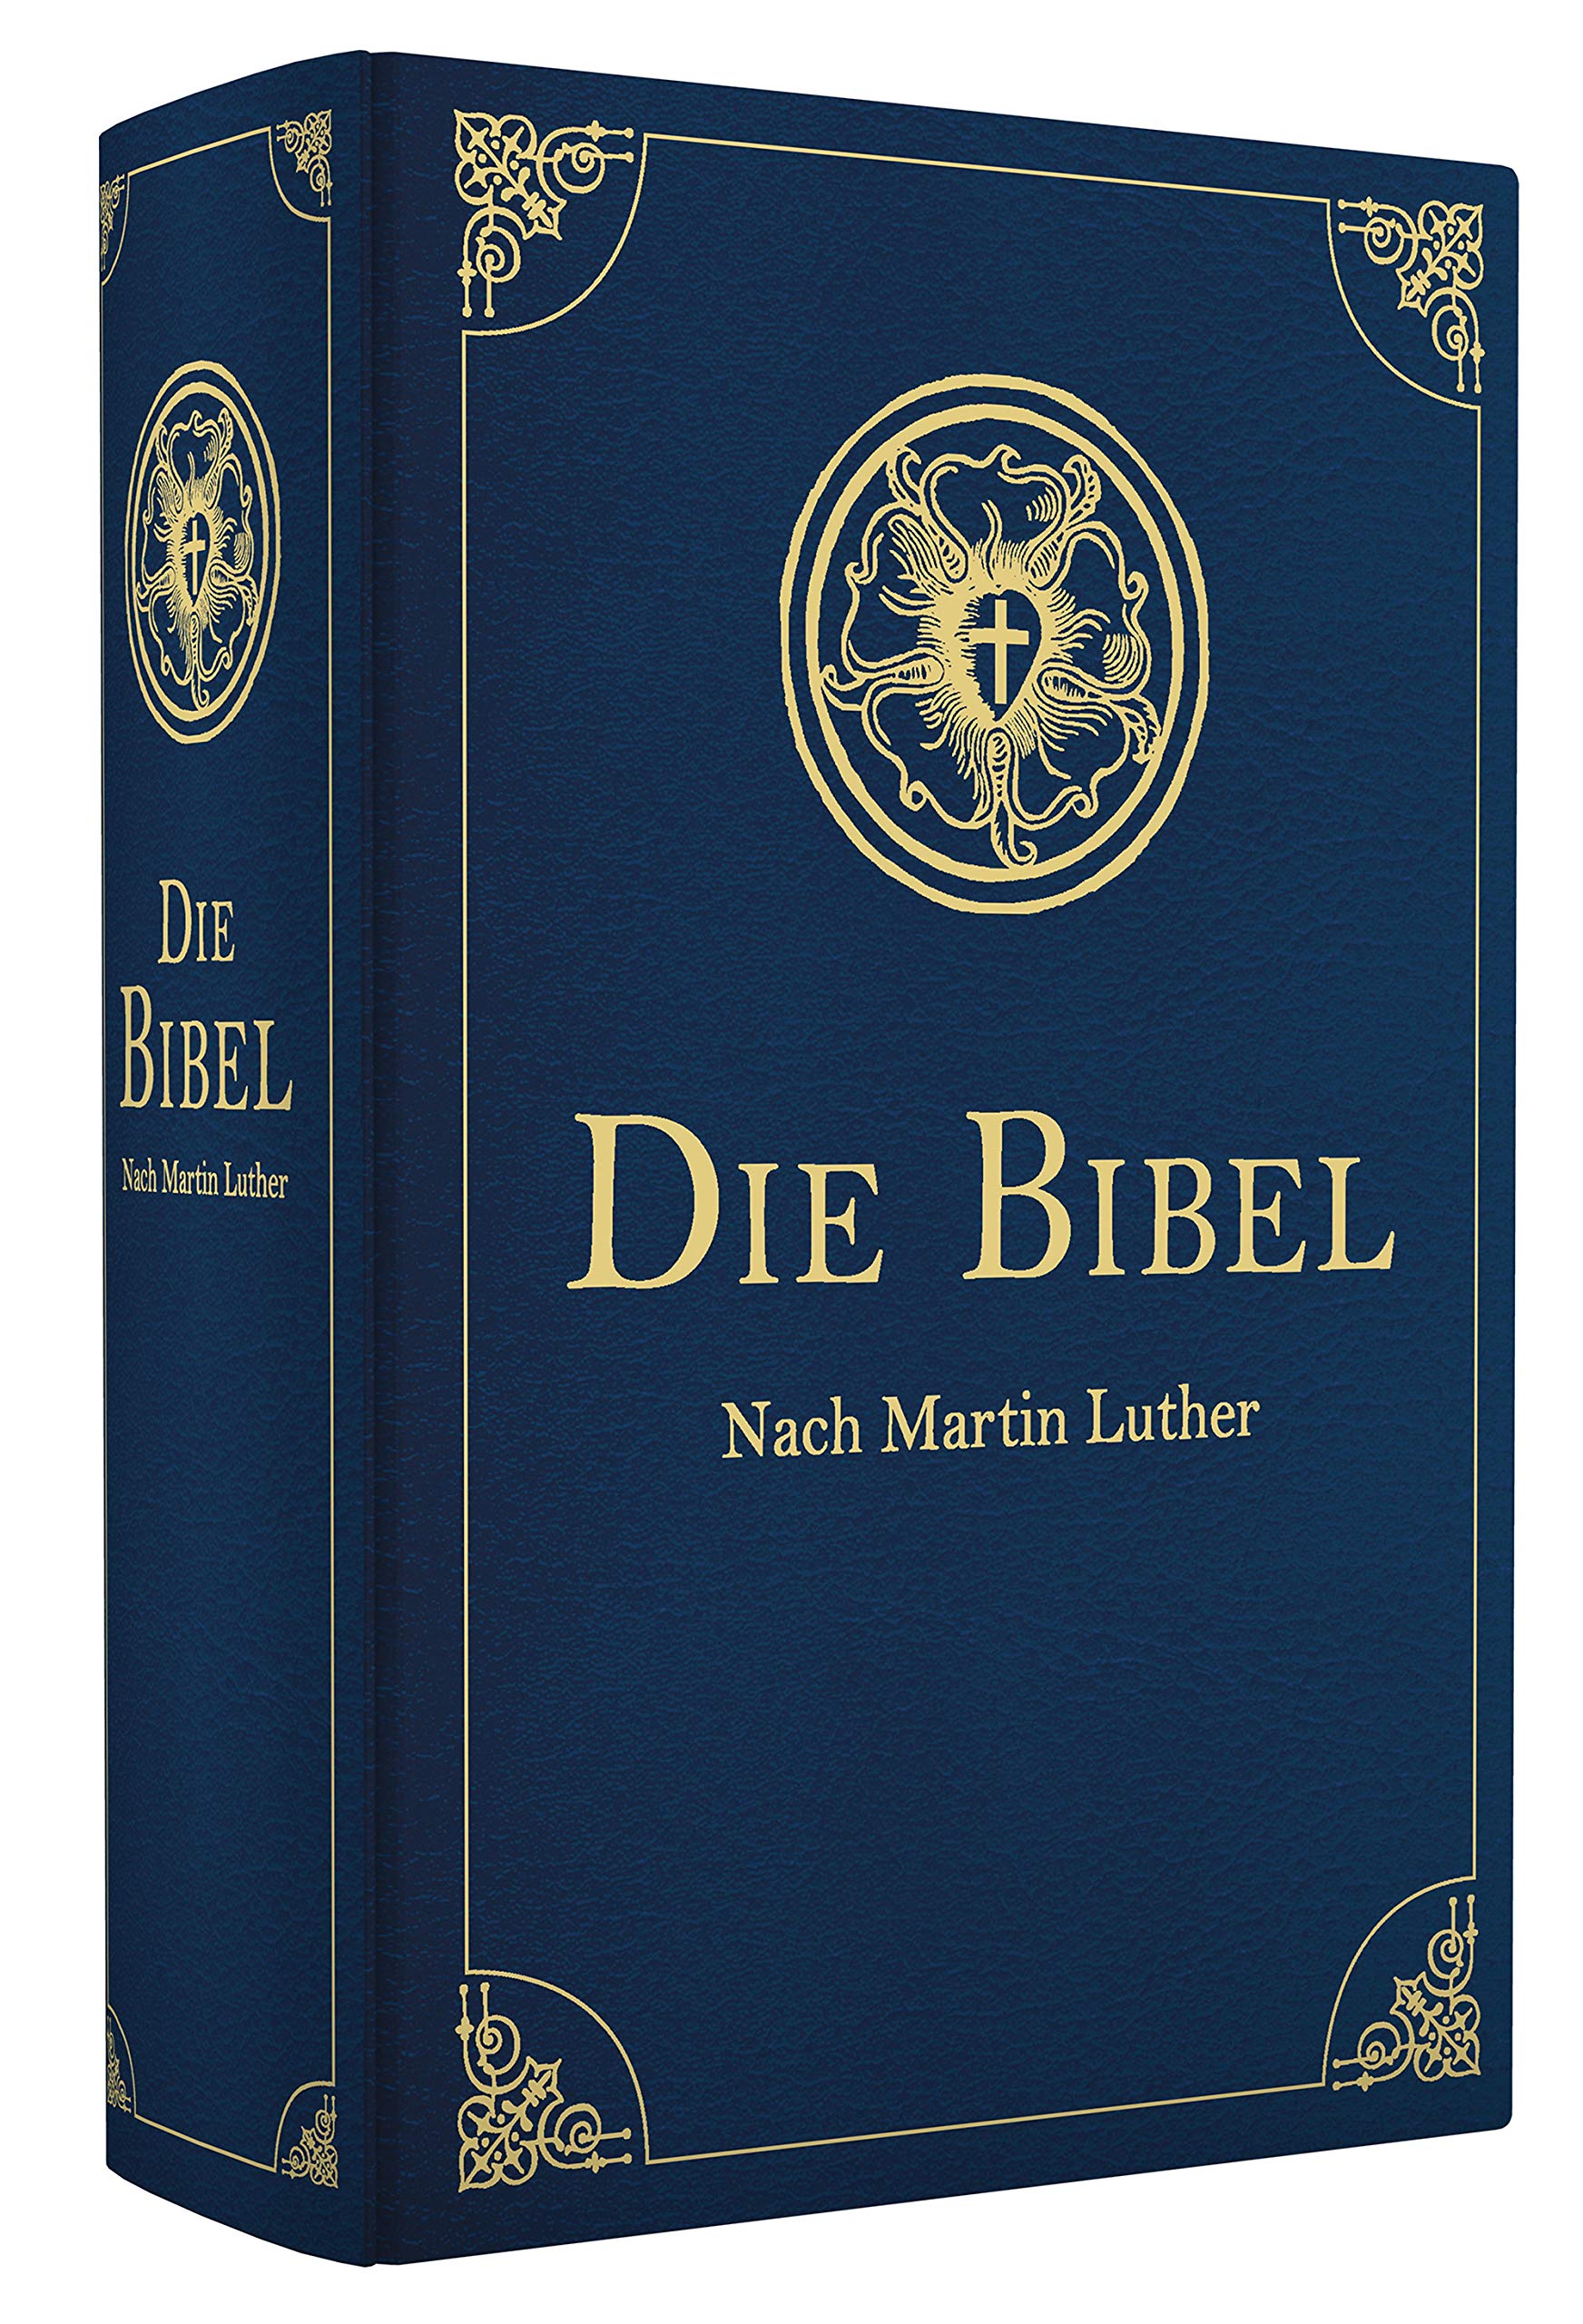 Die Bibel - Altes und Neues Testament: Übersetzung von Martin Luther, Textfassung 1912.